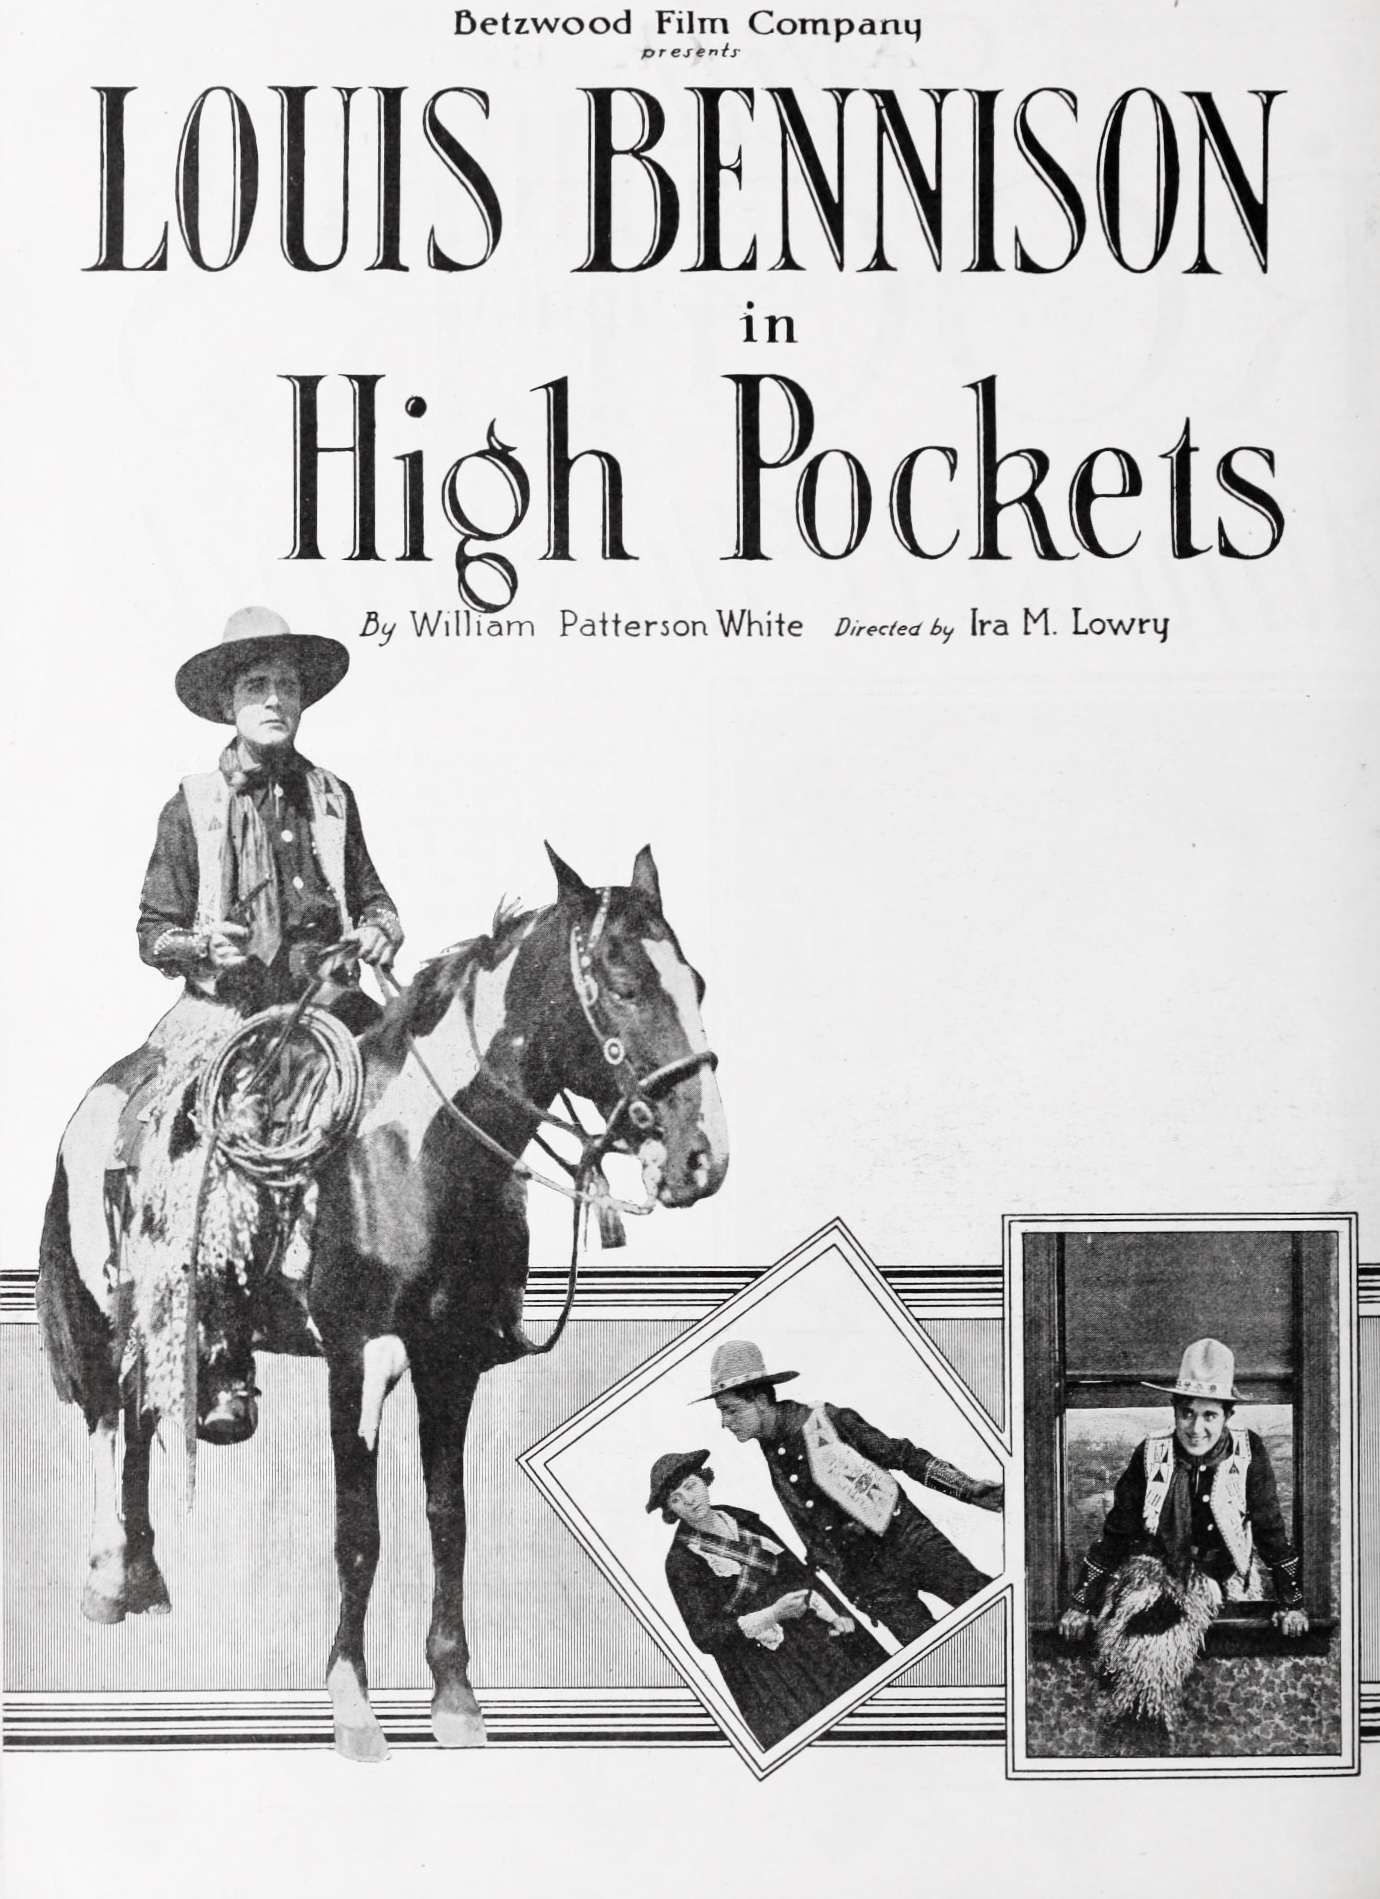 High Pockets